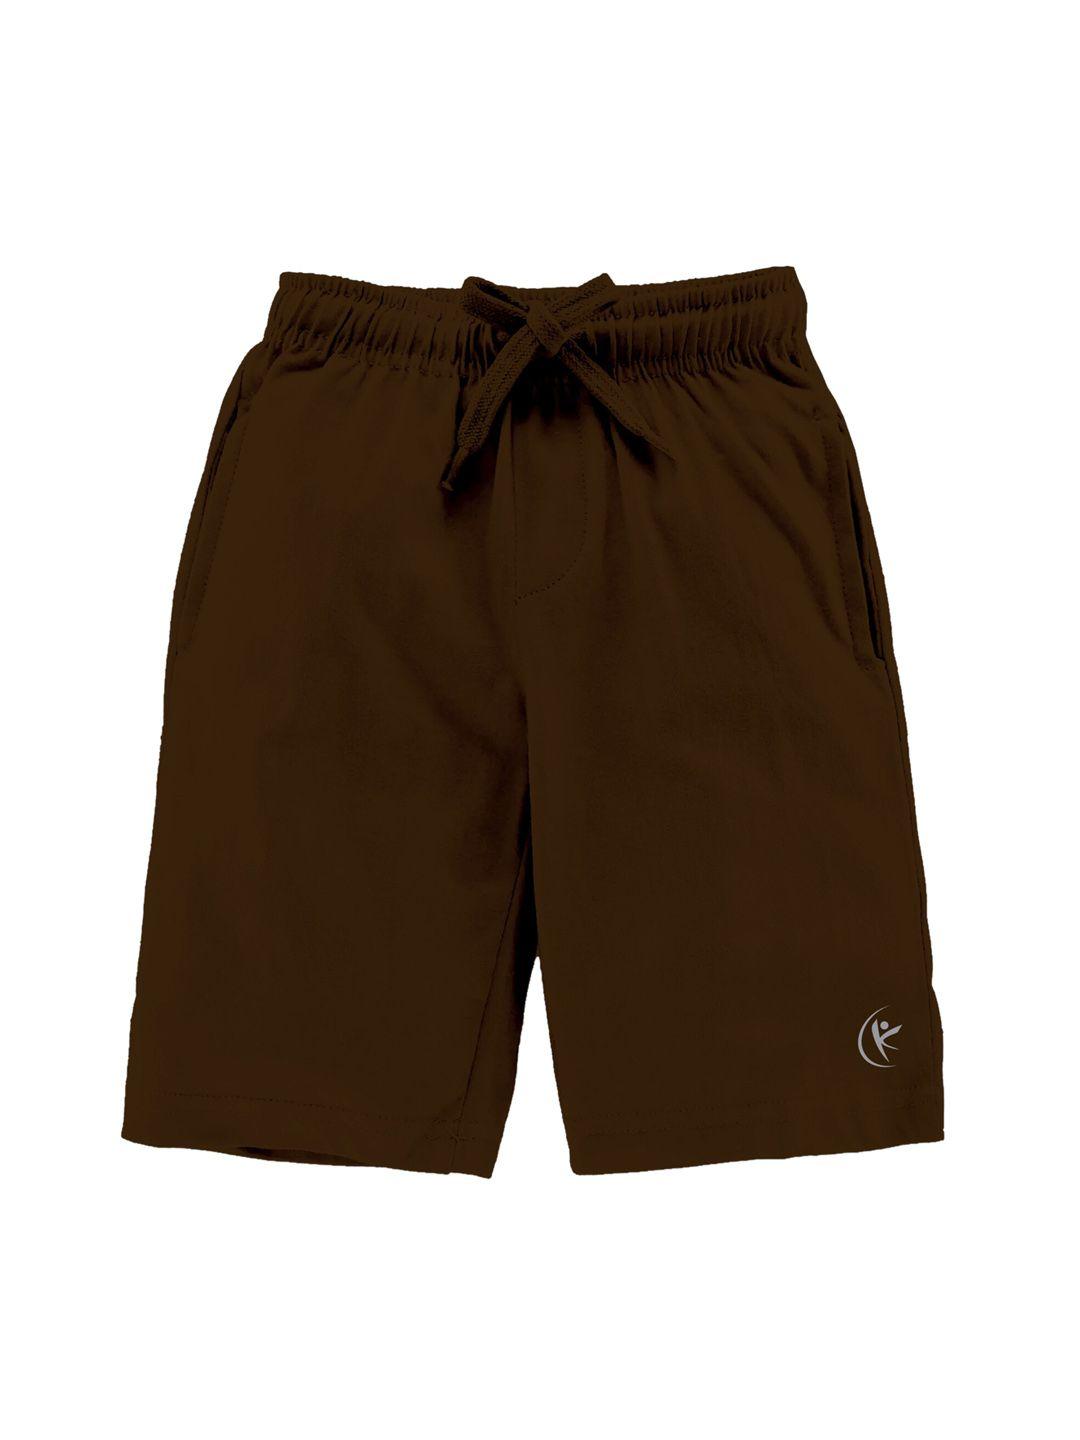 kiddopanti-boys-brown-cotton-shorts